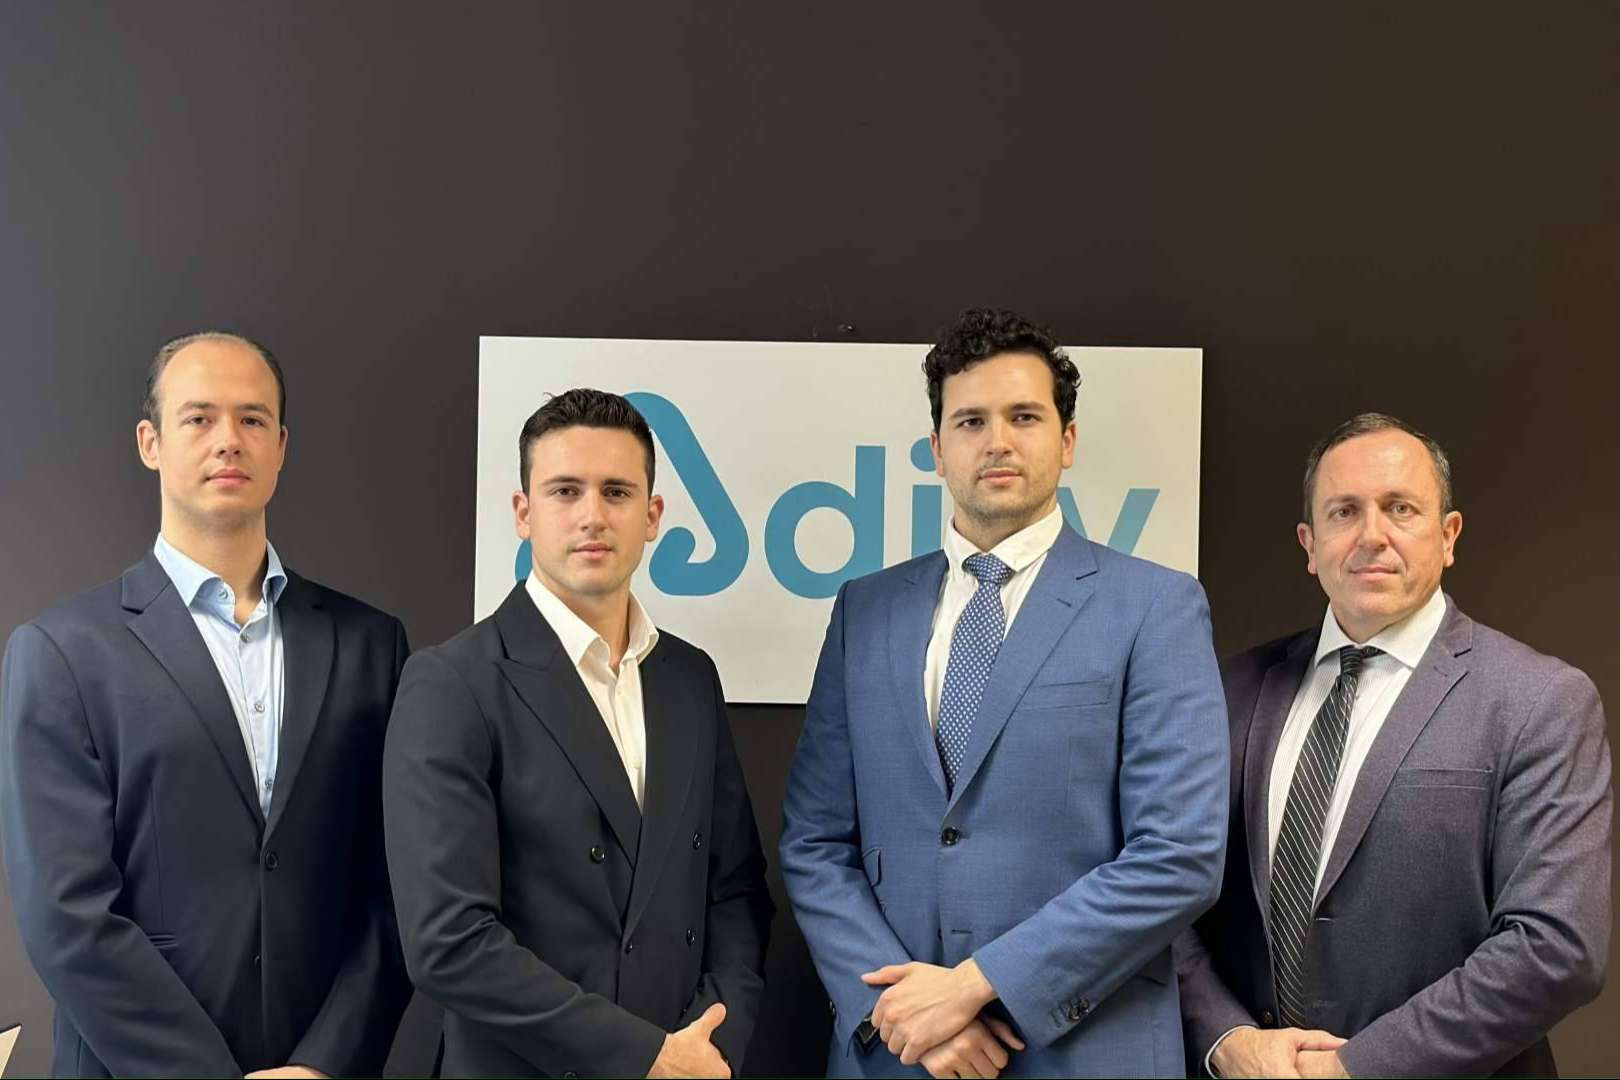  La firma Adity trabaja para convertirse en la mejor forma de contratar seguros en España 